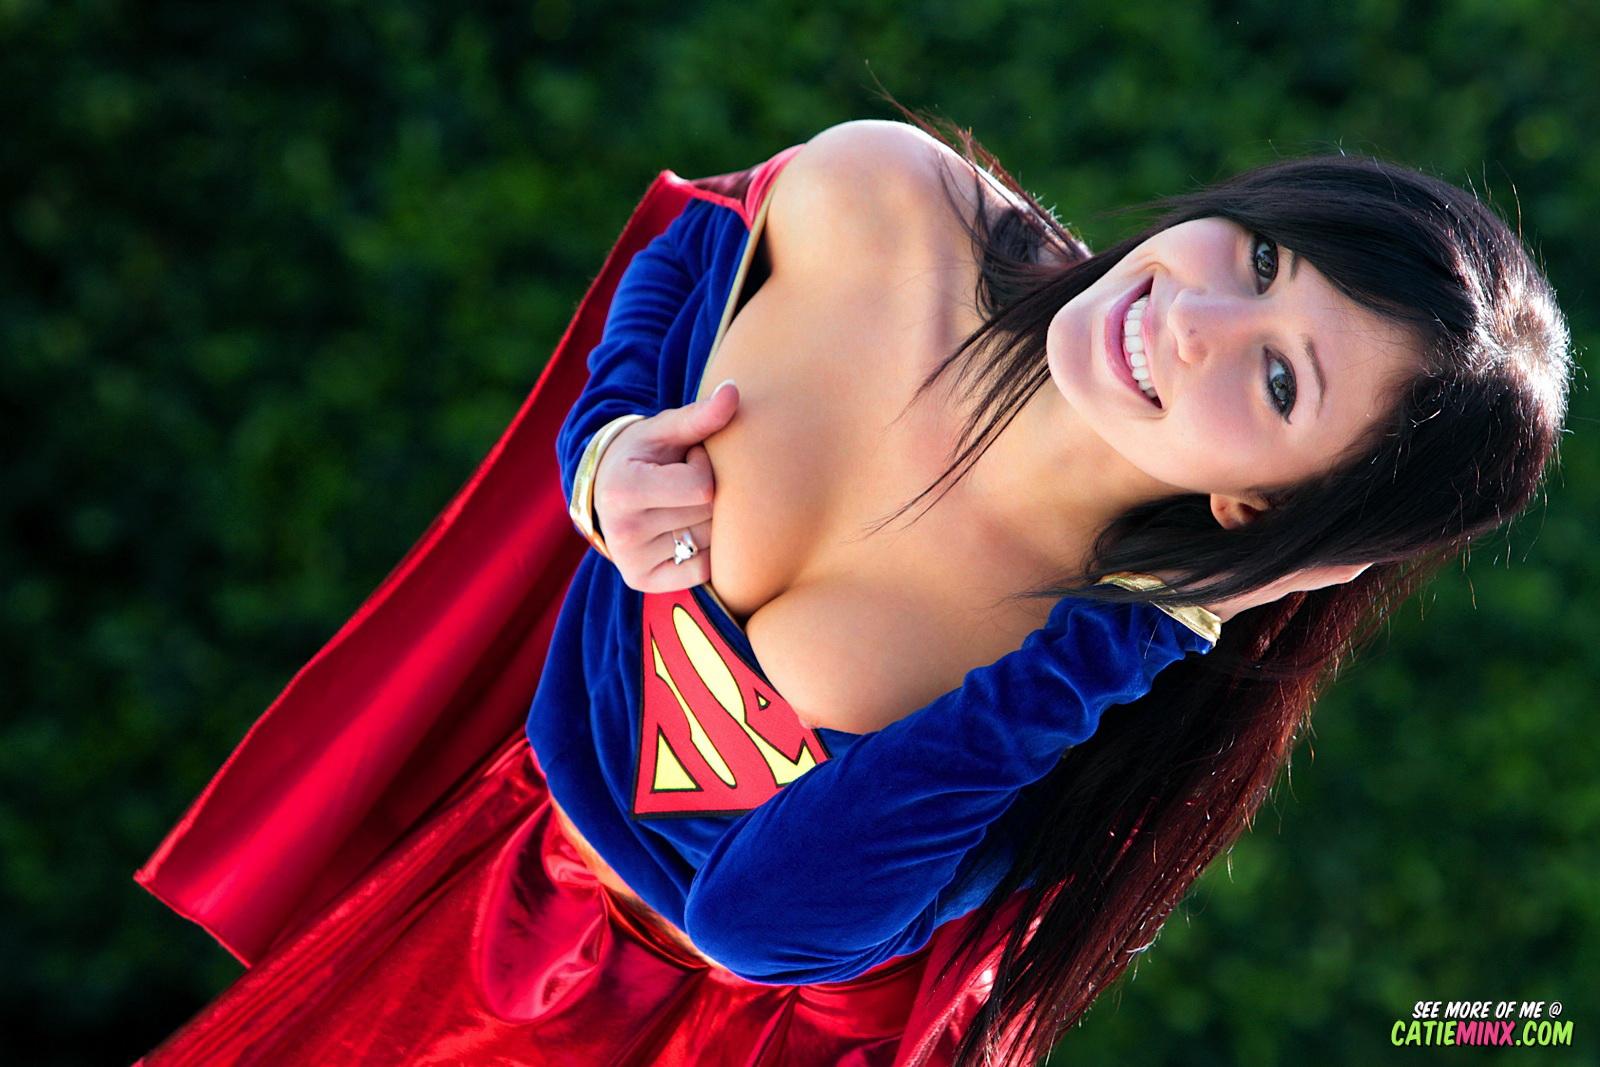 Mild mannered nerd Catie Minx reveals her super naughty powers as Supergirl #53722938